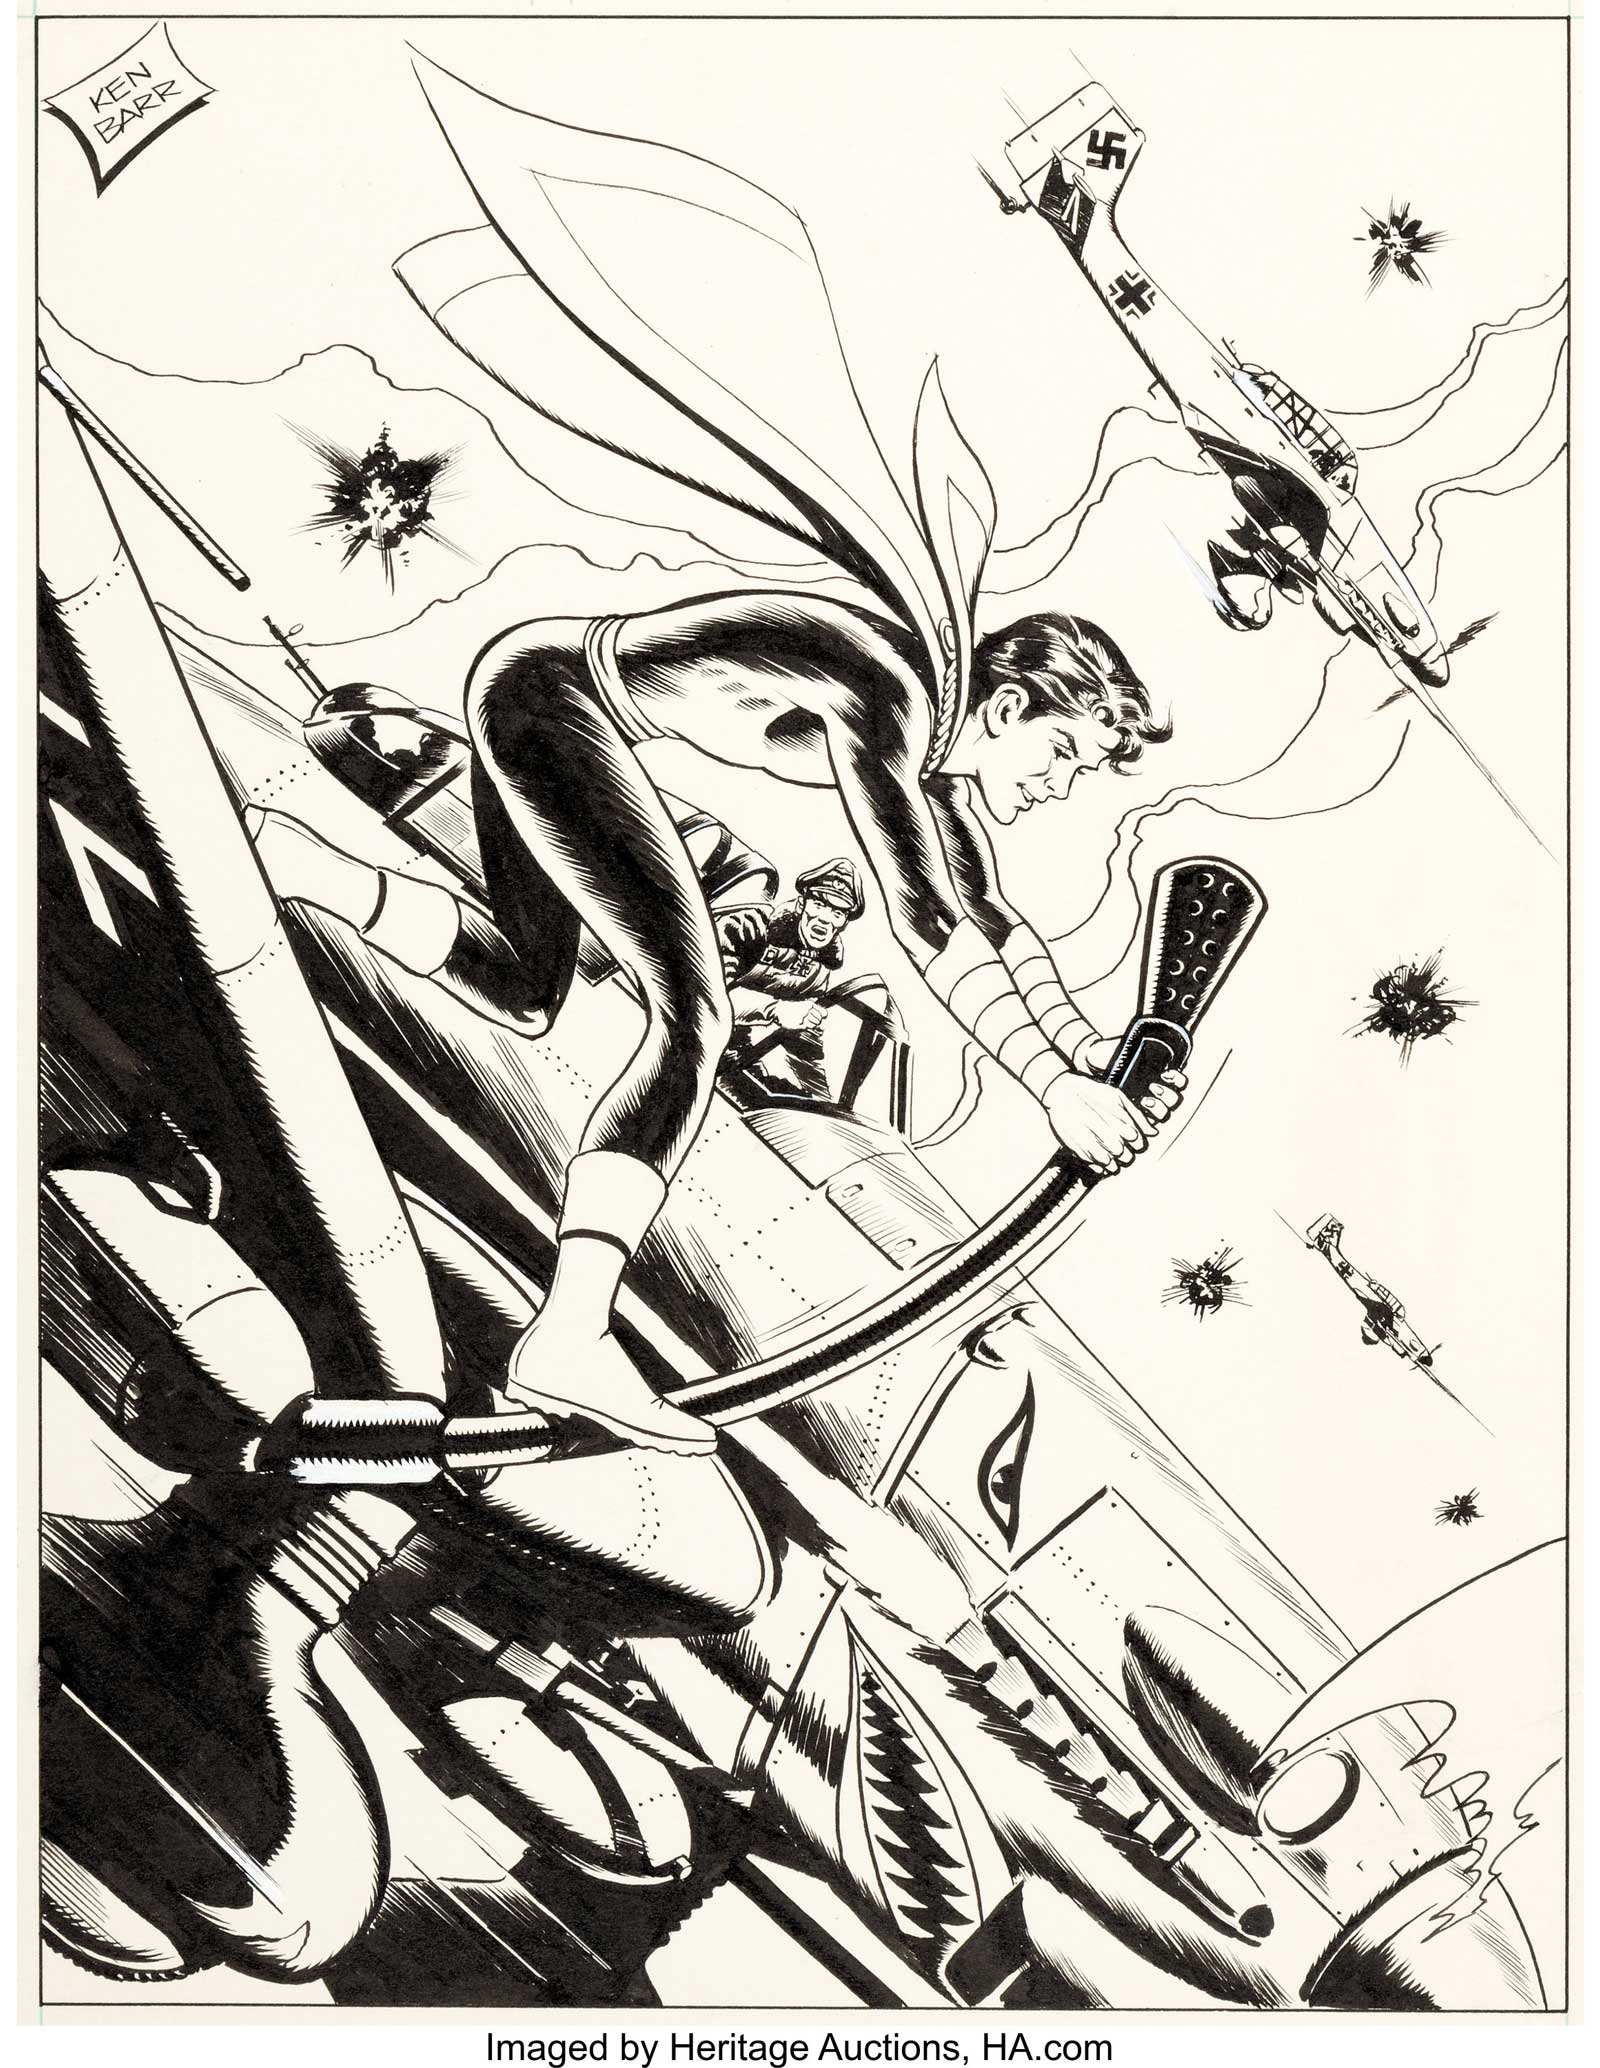  Captain Marvel Jr. Specialty Illustration by Ken Barr